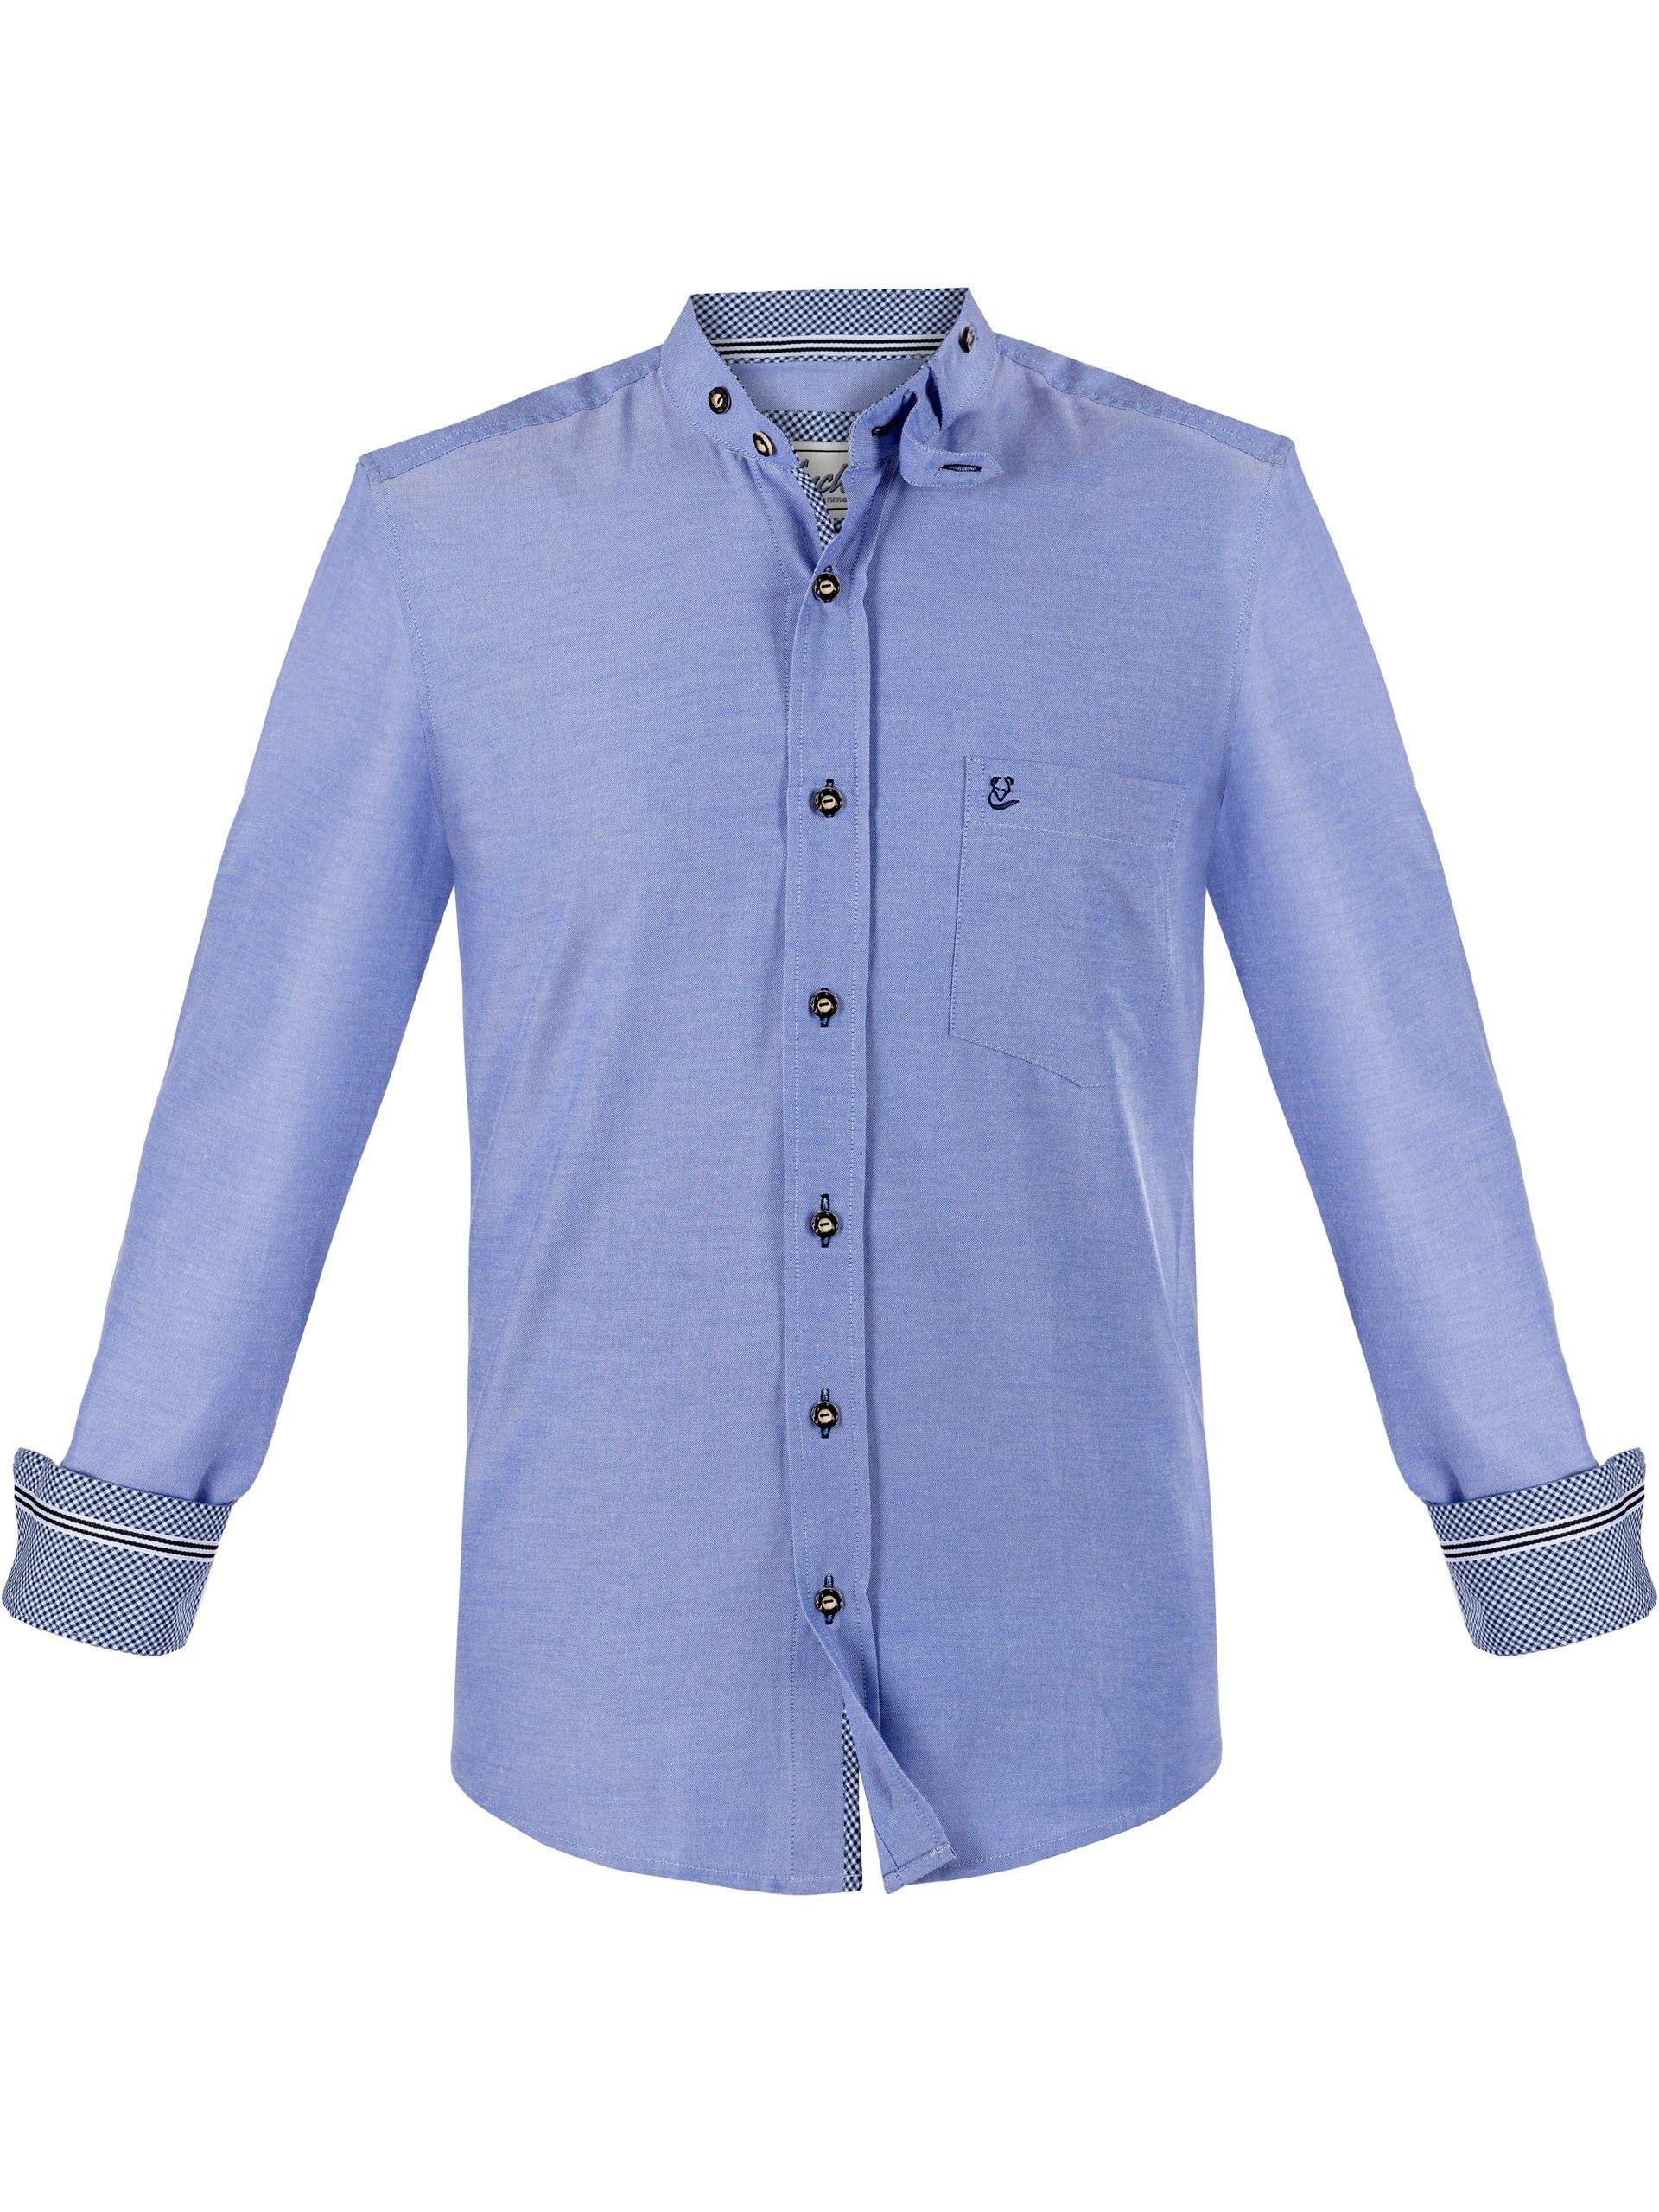 FUCHS Trachtenhemd Hemd Christoph blau mit Stehkragen | Trachtenhemden